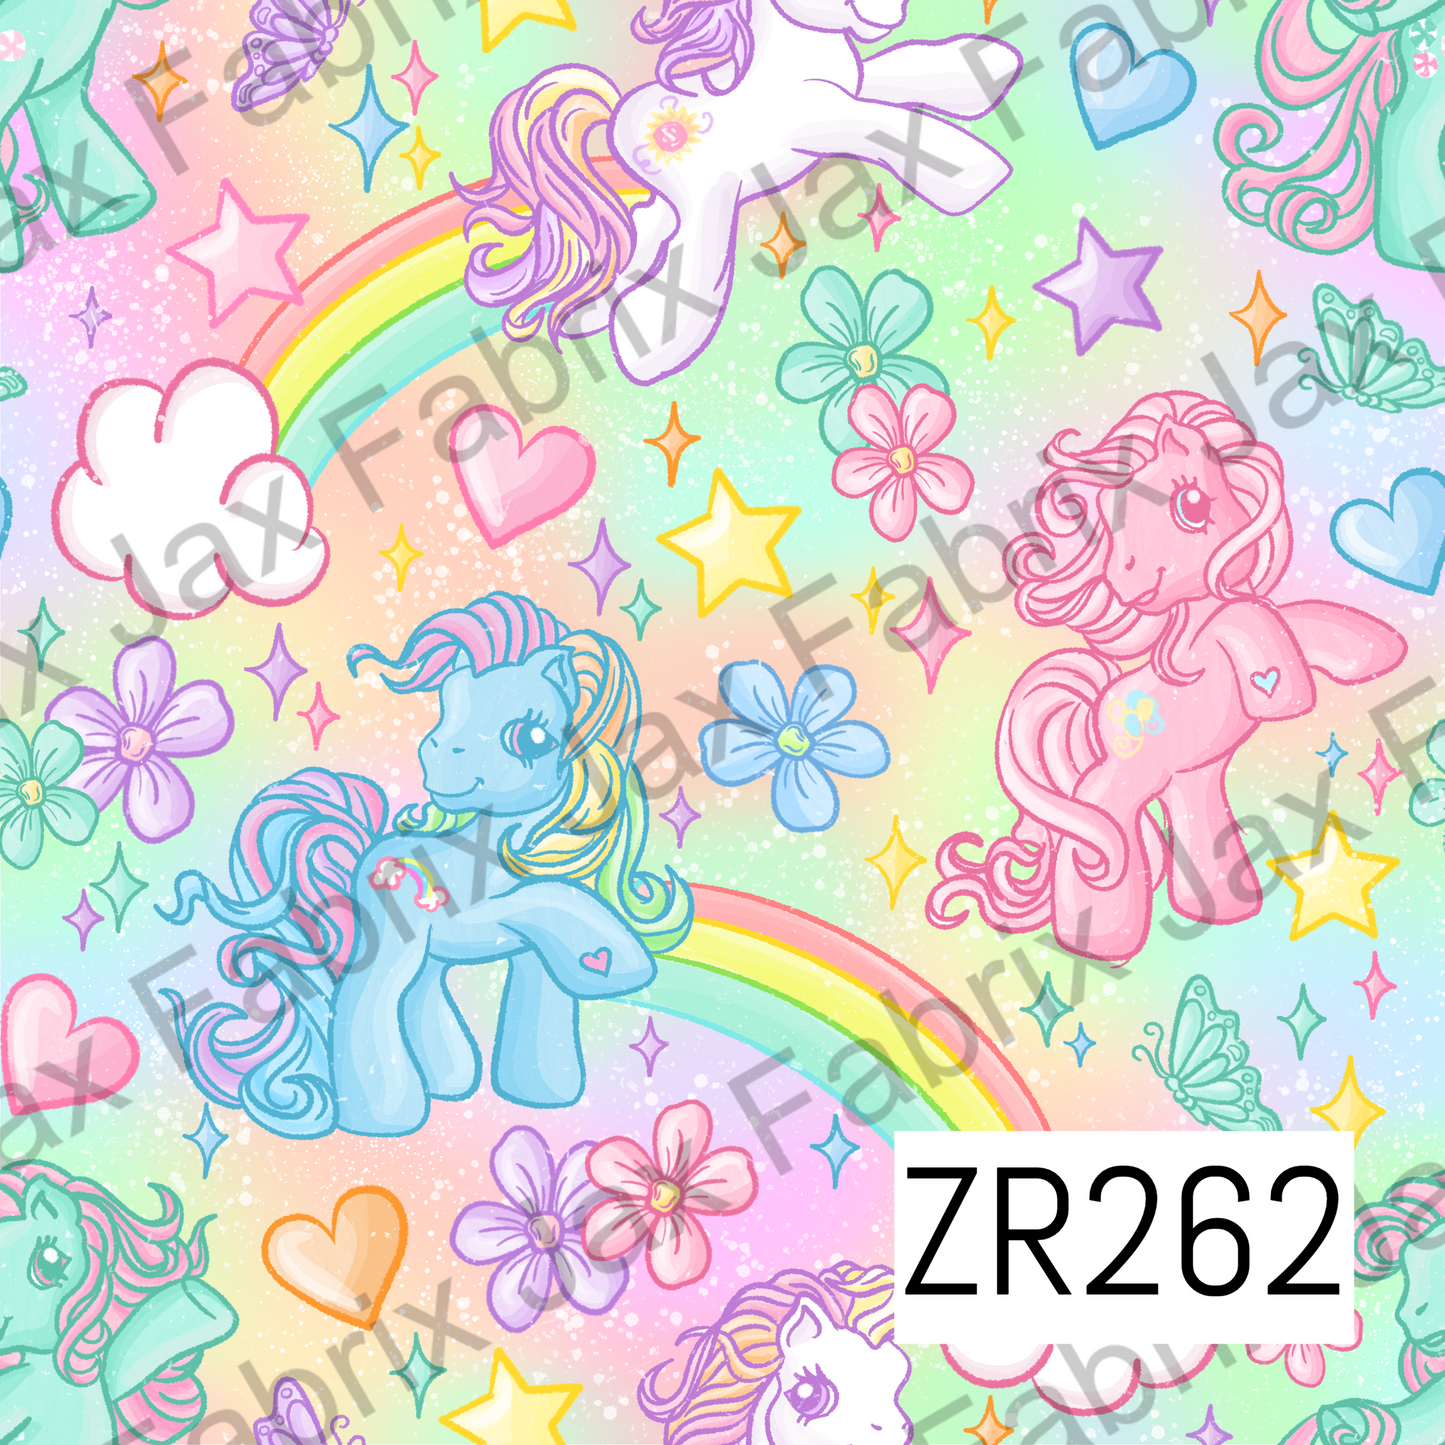 Rainbow Ponies ZR262